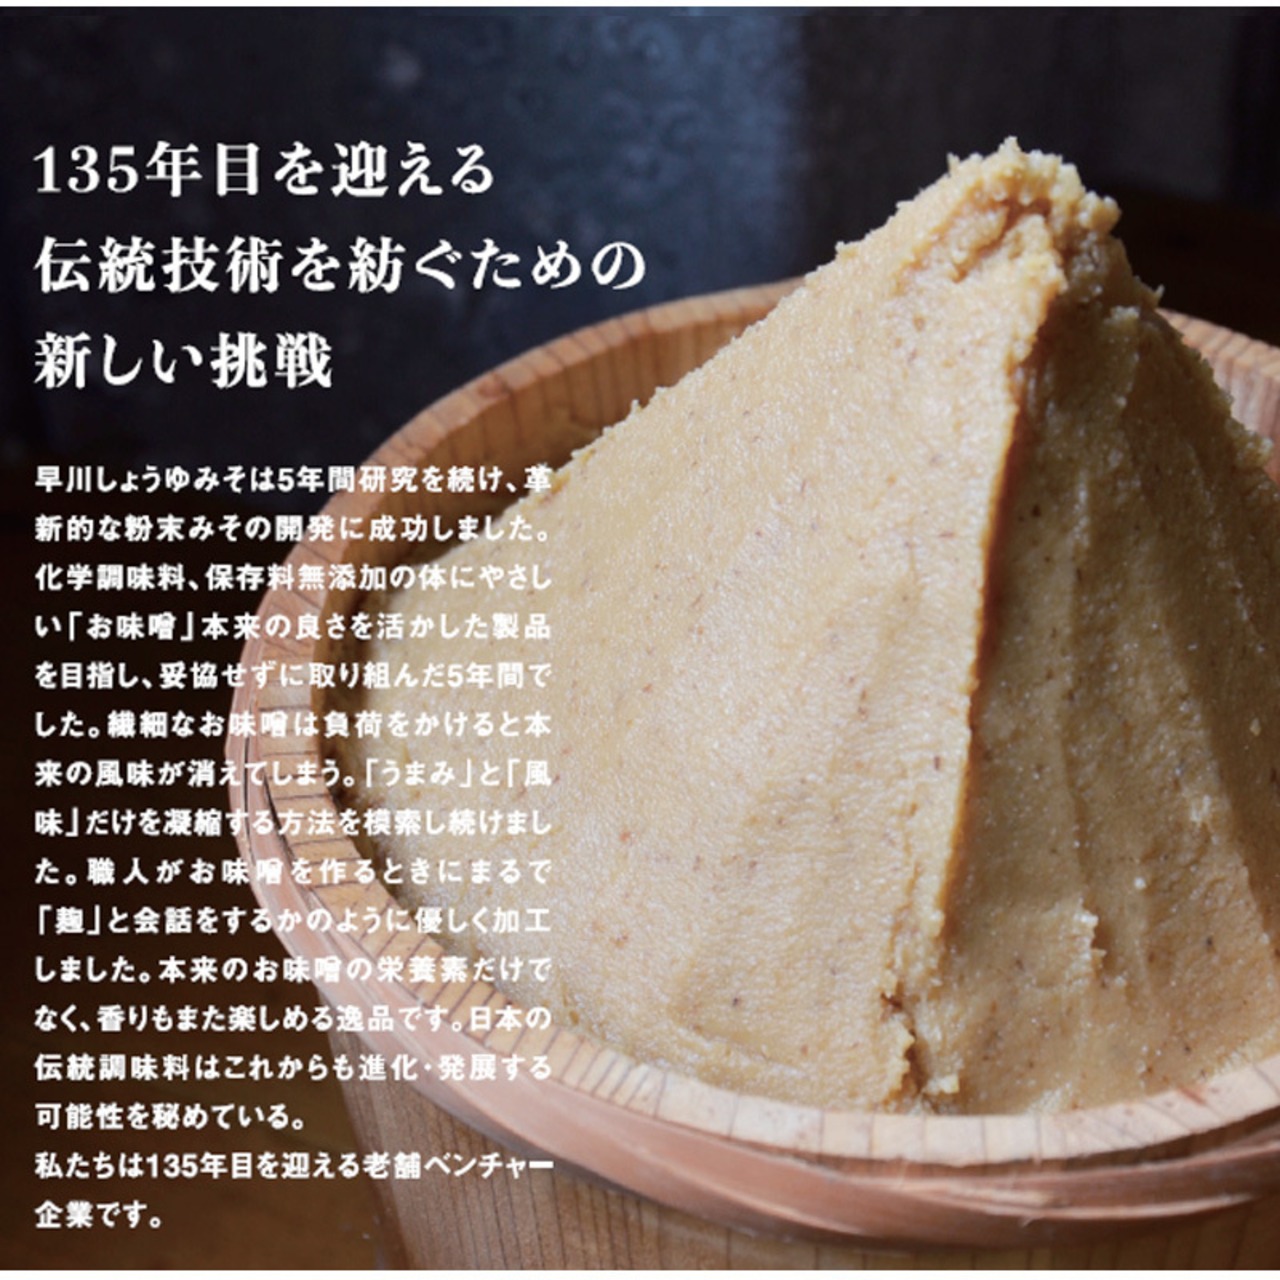 早川しょうゆみそ 早川のみそパウダー umami・so -みそ- 70g 2本セット 乾燥味噌